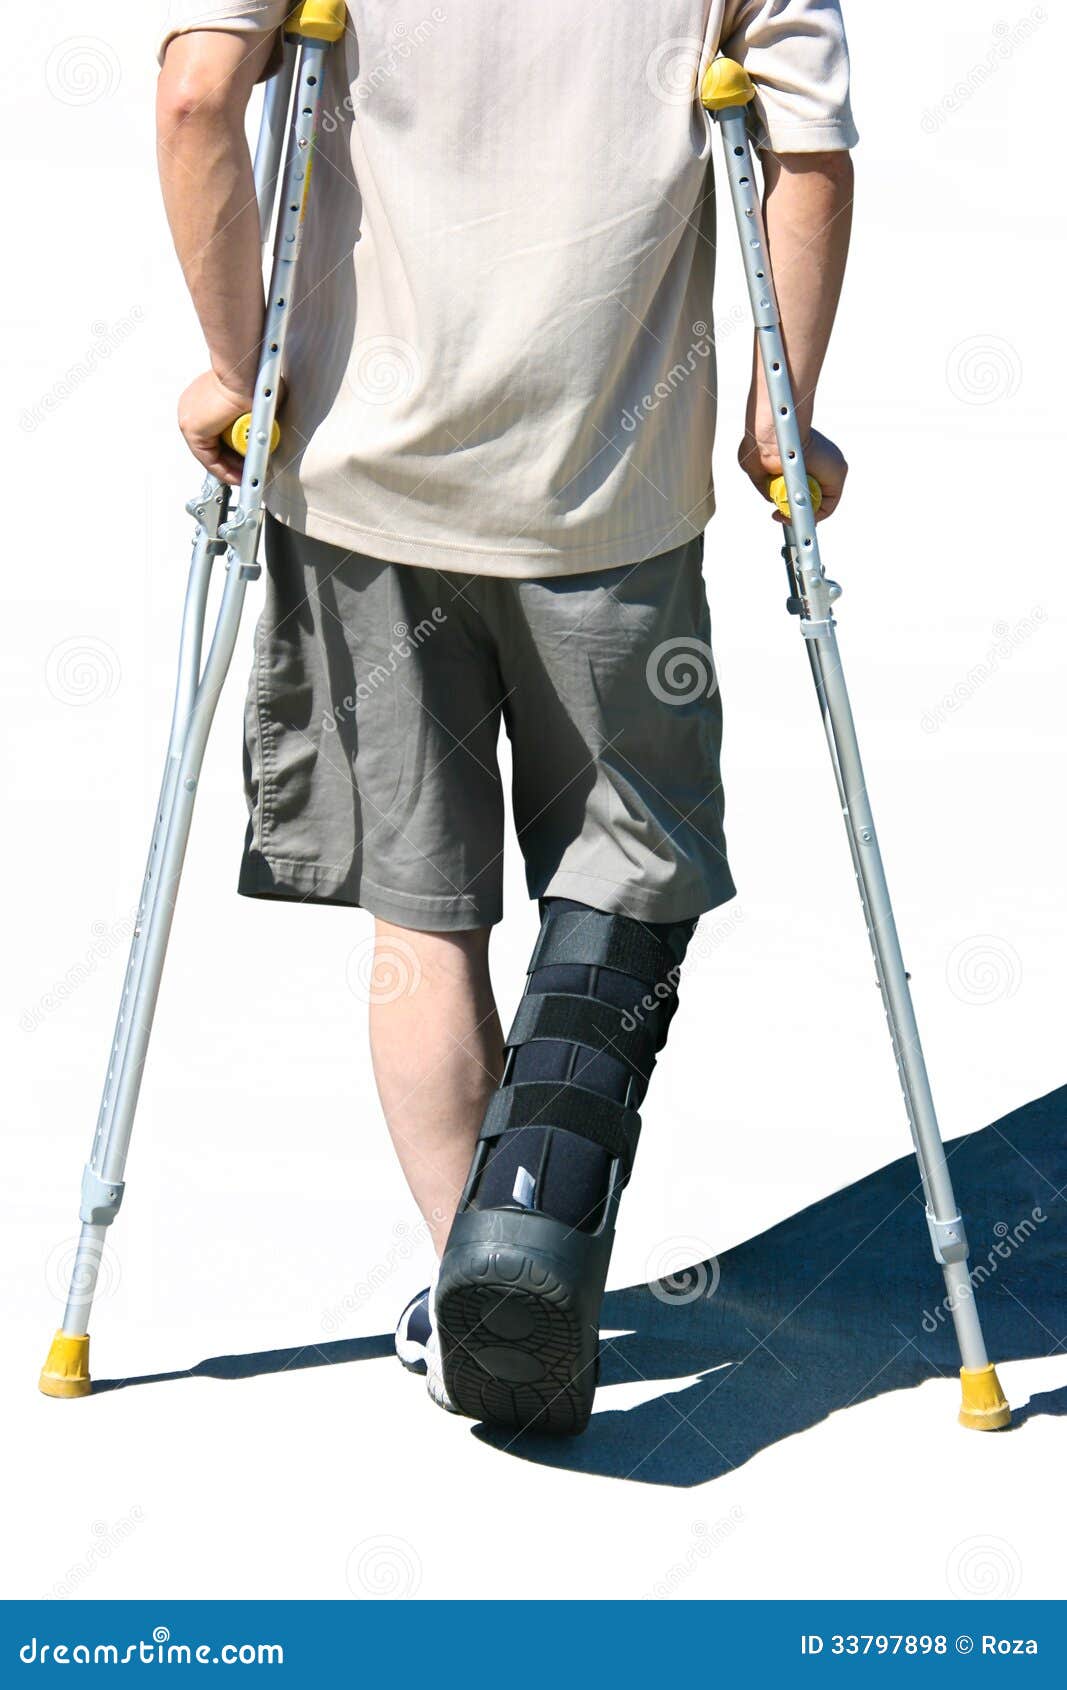 Костыли после эндопротезирования. На костылях по лестнице. Как ходить на костылях по лестнице после эндопротезирования. Как правильно ходить на костылях после эндопротезирования. При замене коленного сустава сколько ходить на костылях.